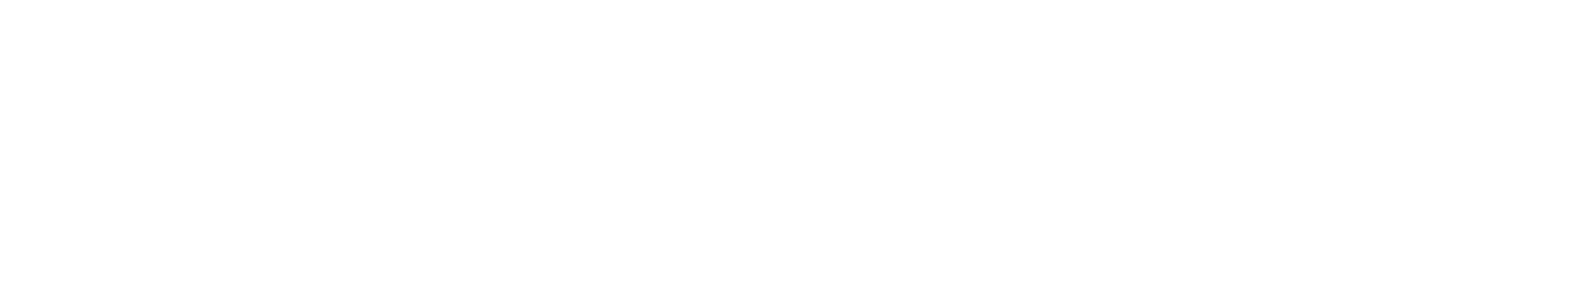 Komatsu Logo groß für dunkle Hintergründe (transparentes PNG)